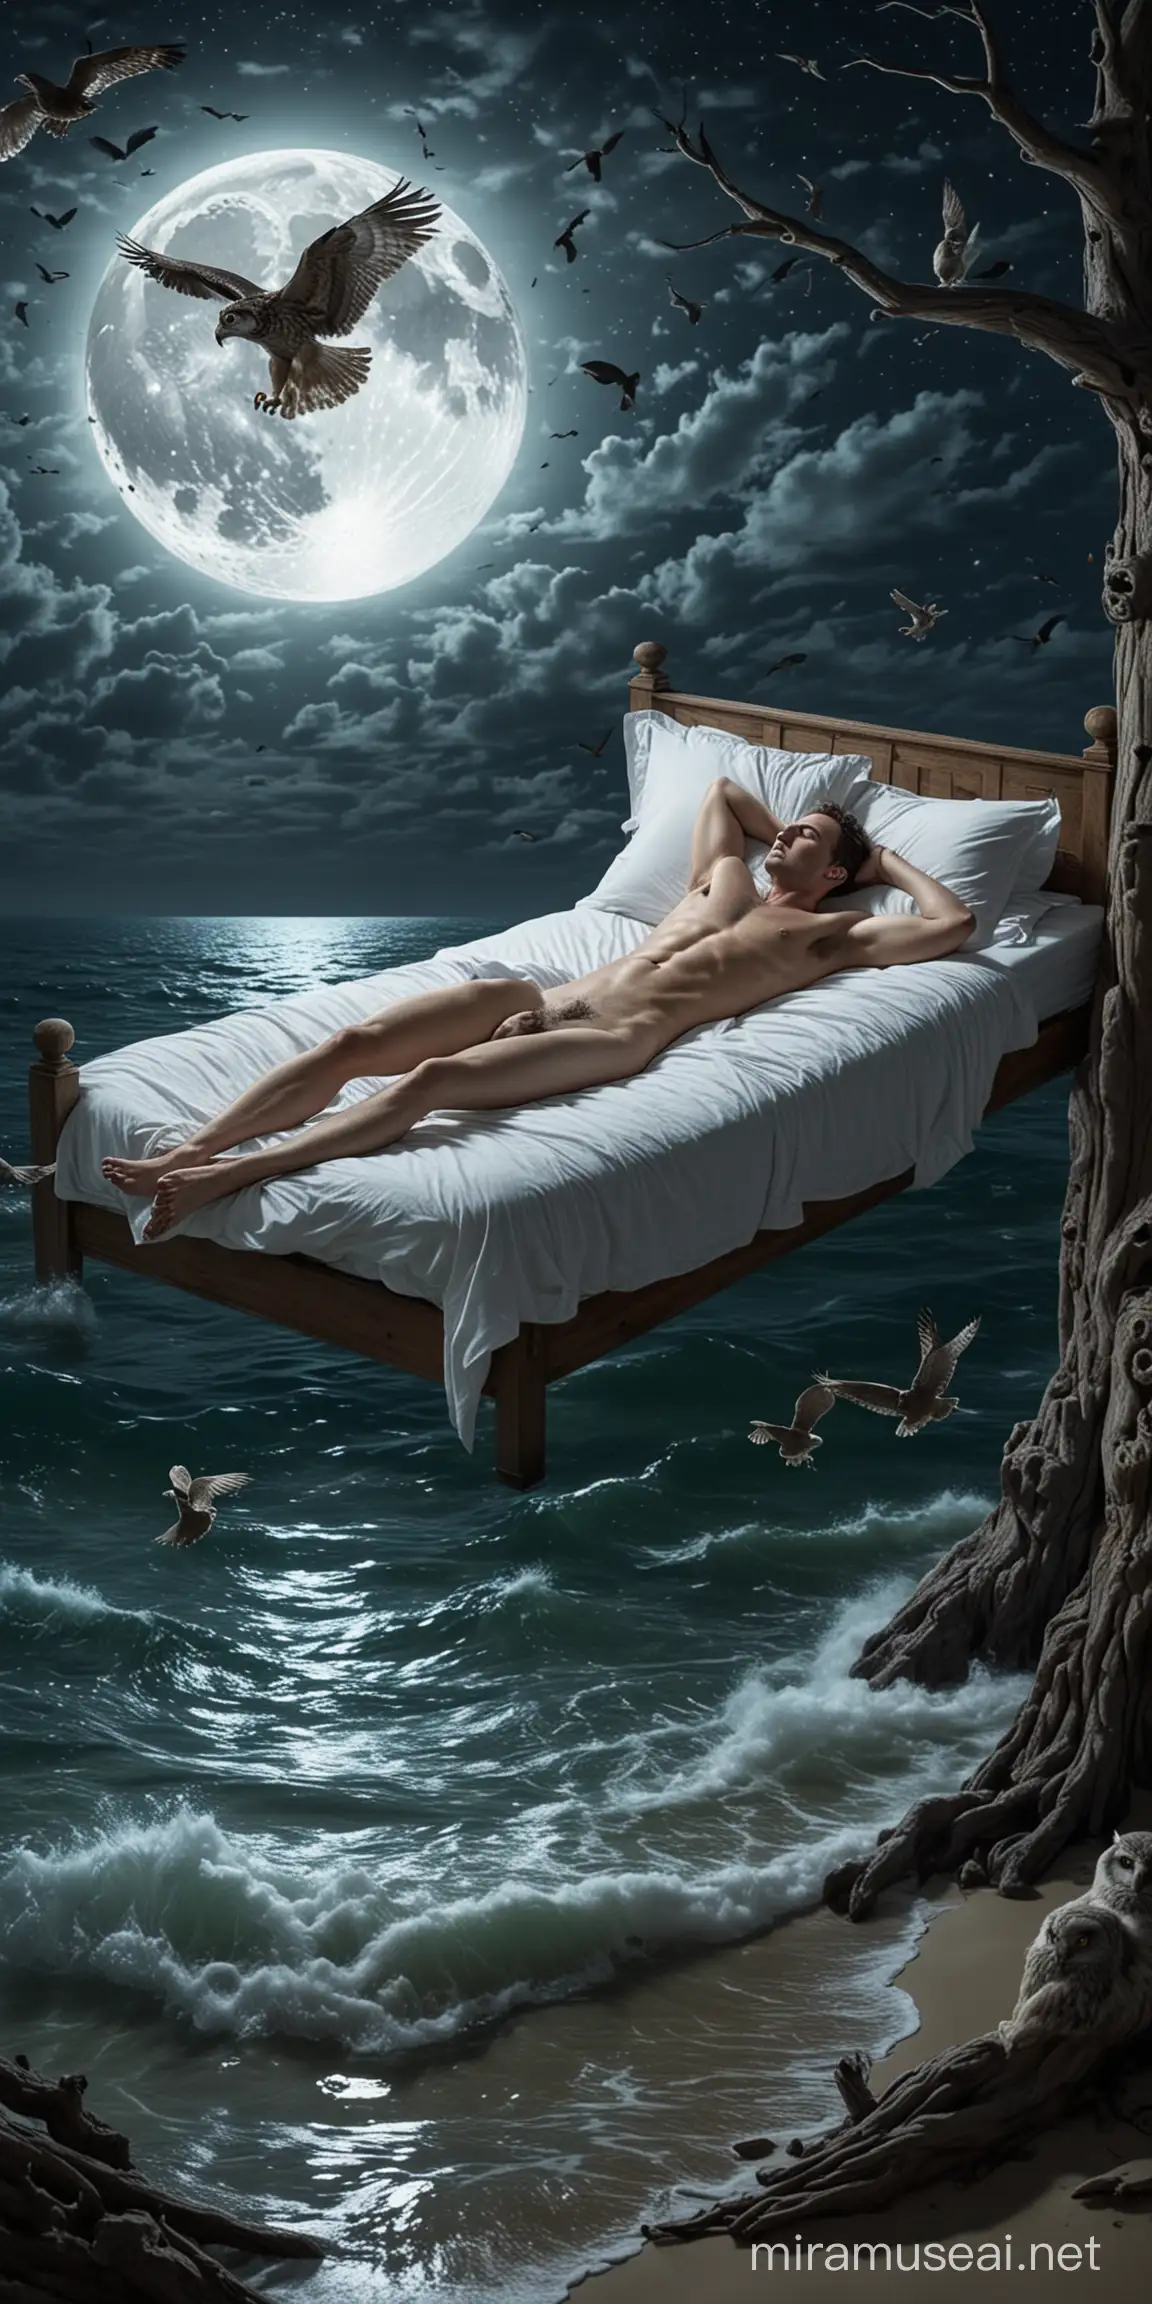 Moonlit Slumber Man Asleep on Bed Afloat in Serene Sea